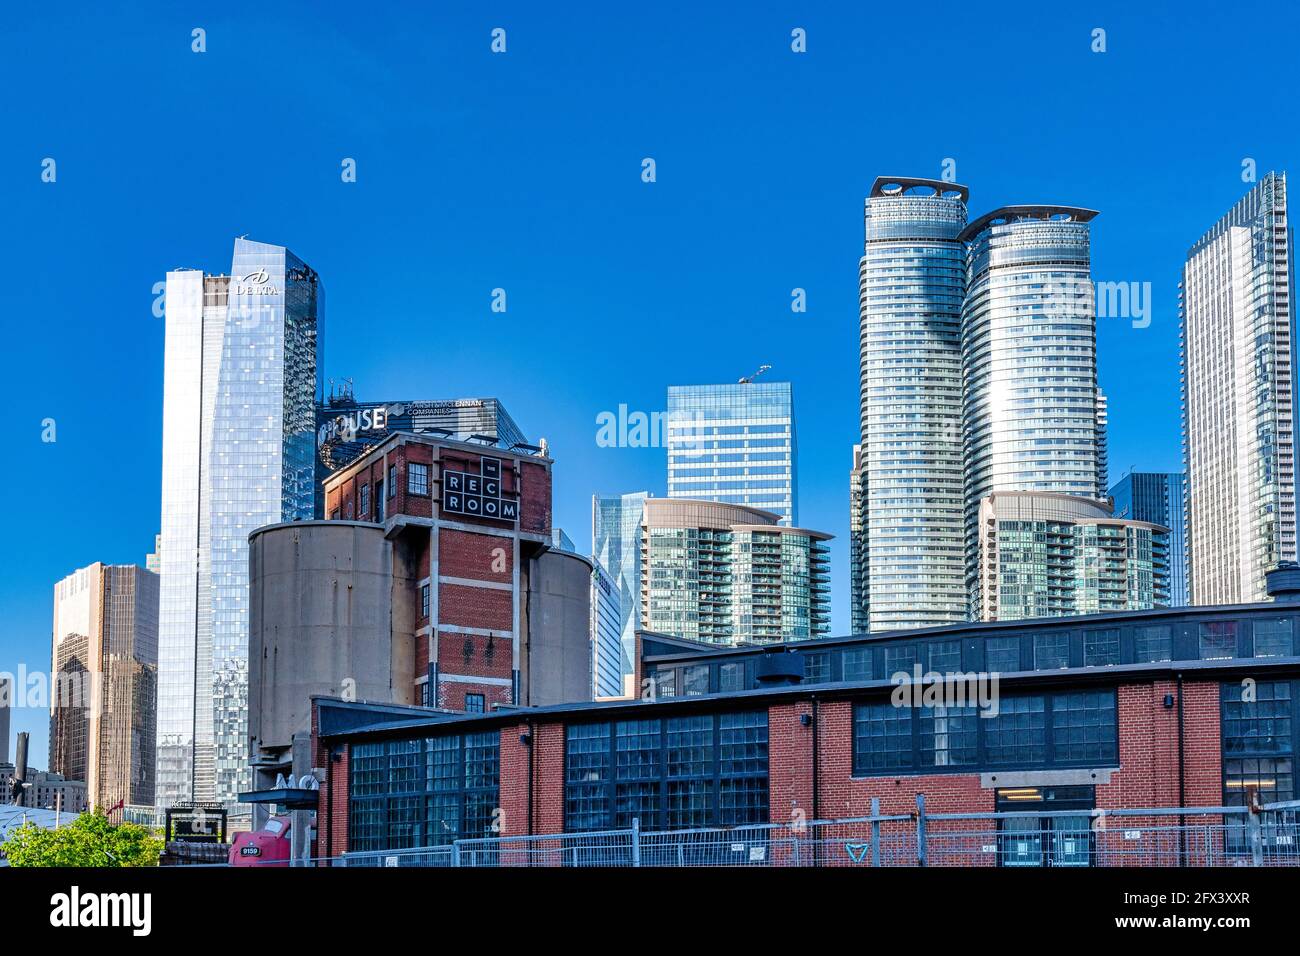 Contraste architectural de l'édifice Roundhouse et des gratte-ciels modernes dans le quartier du centre-ville de Toronto, au Canada Banque D'Images